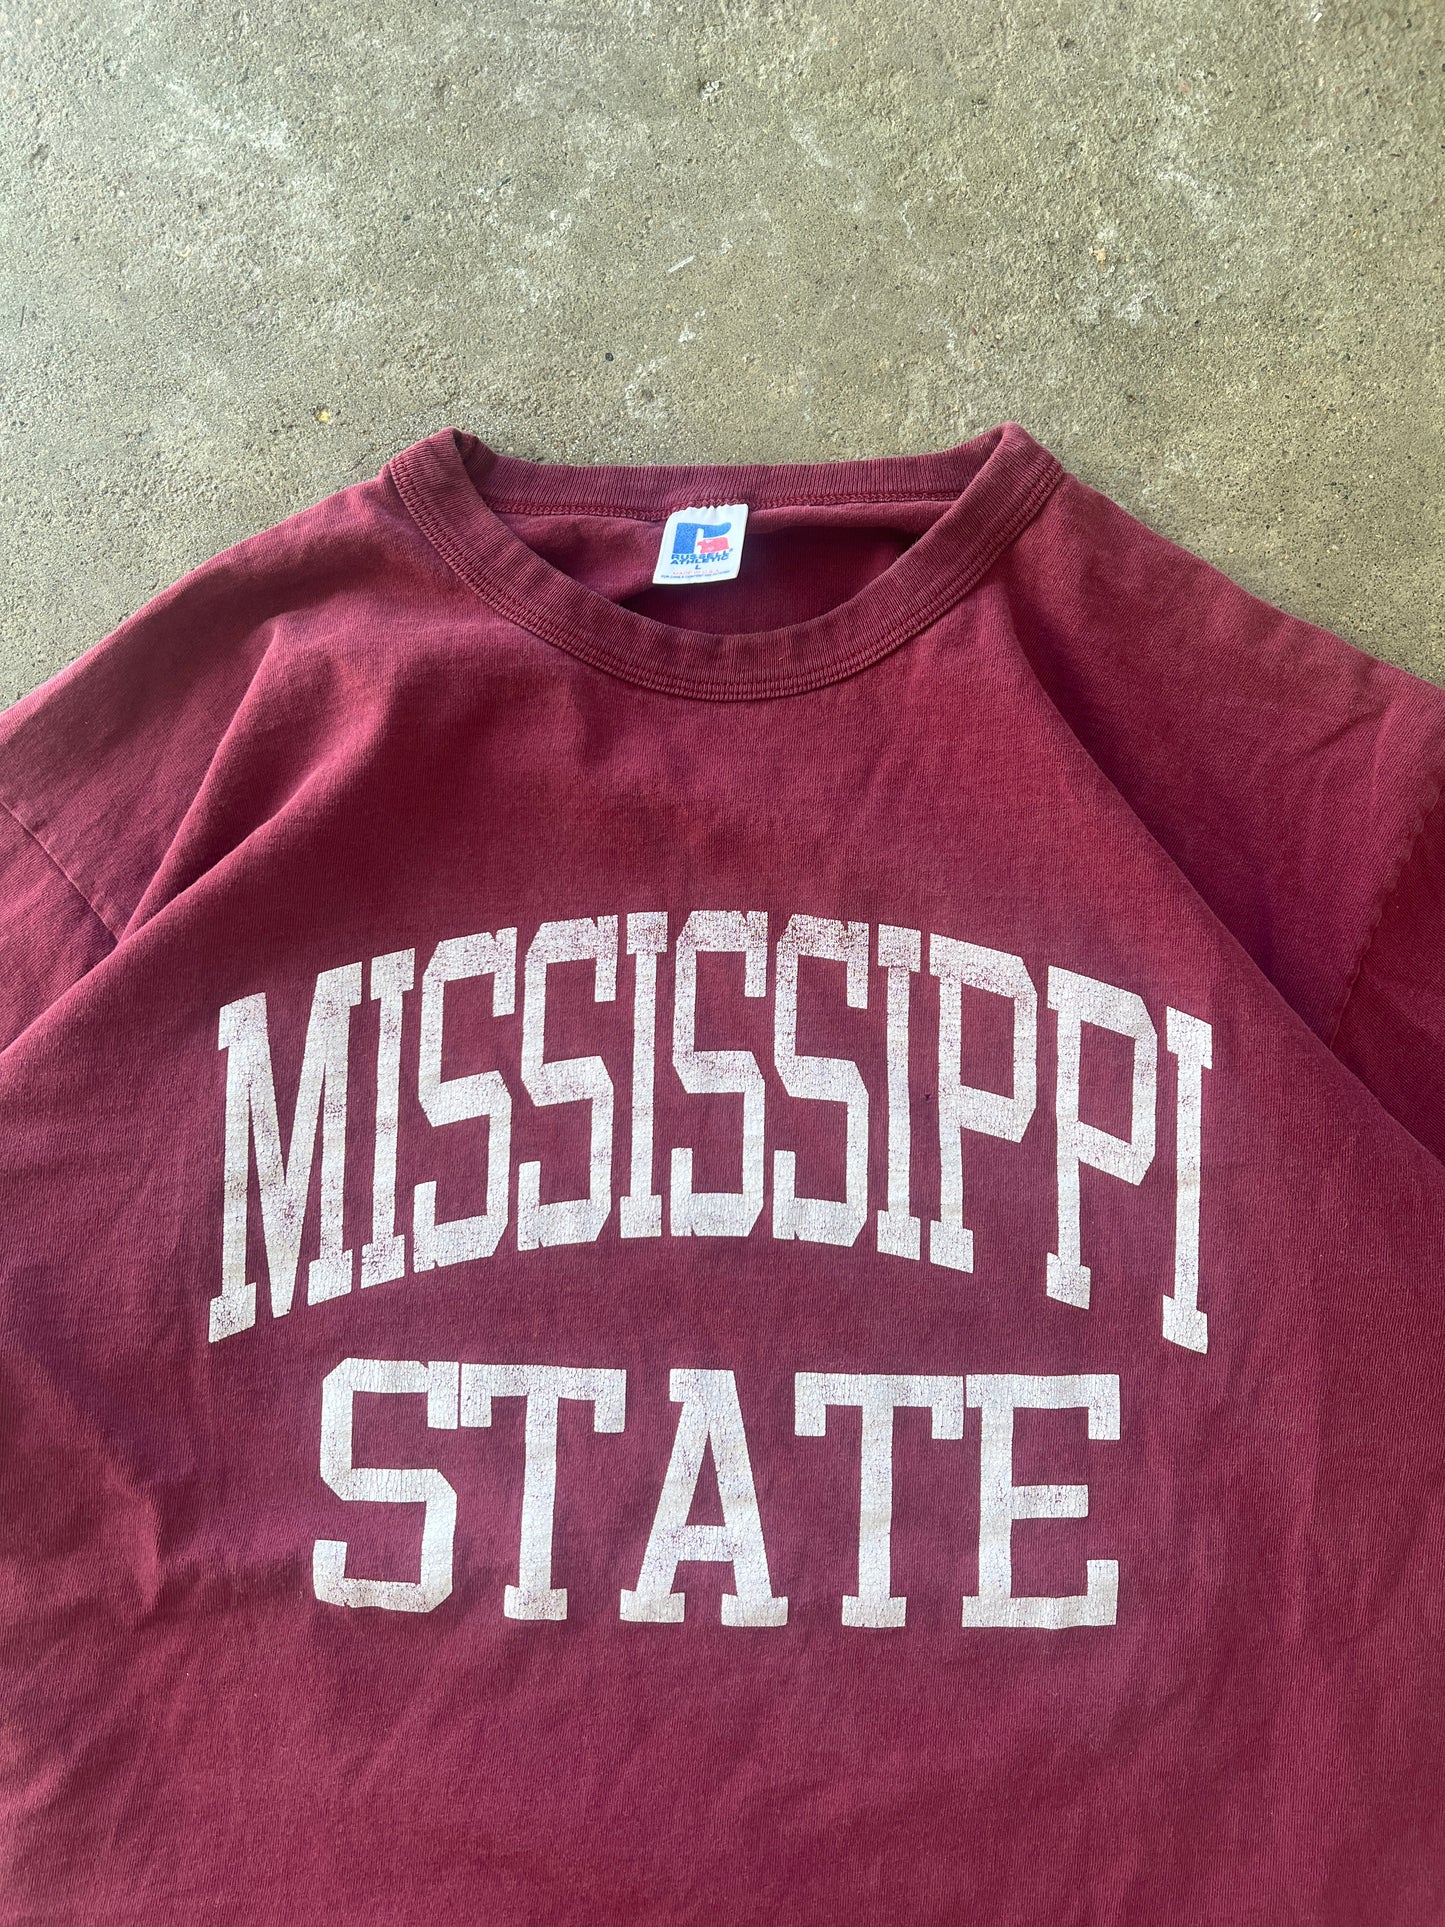 Vintage Mississippi State Shirt - L